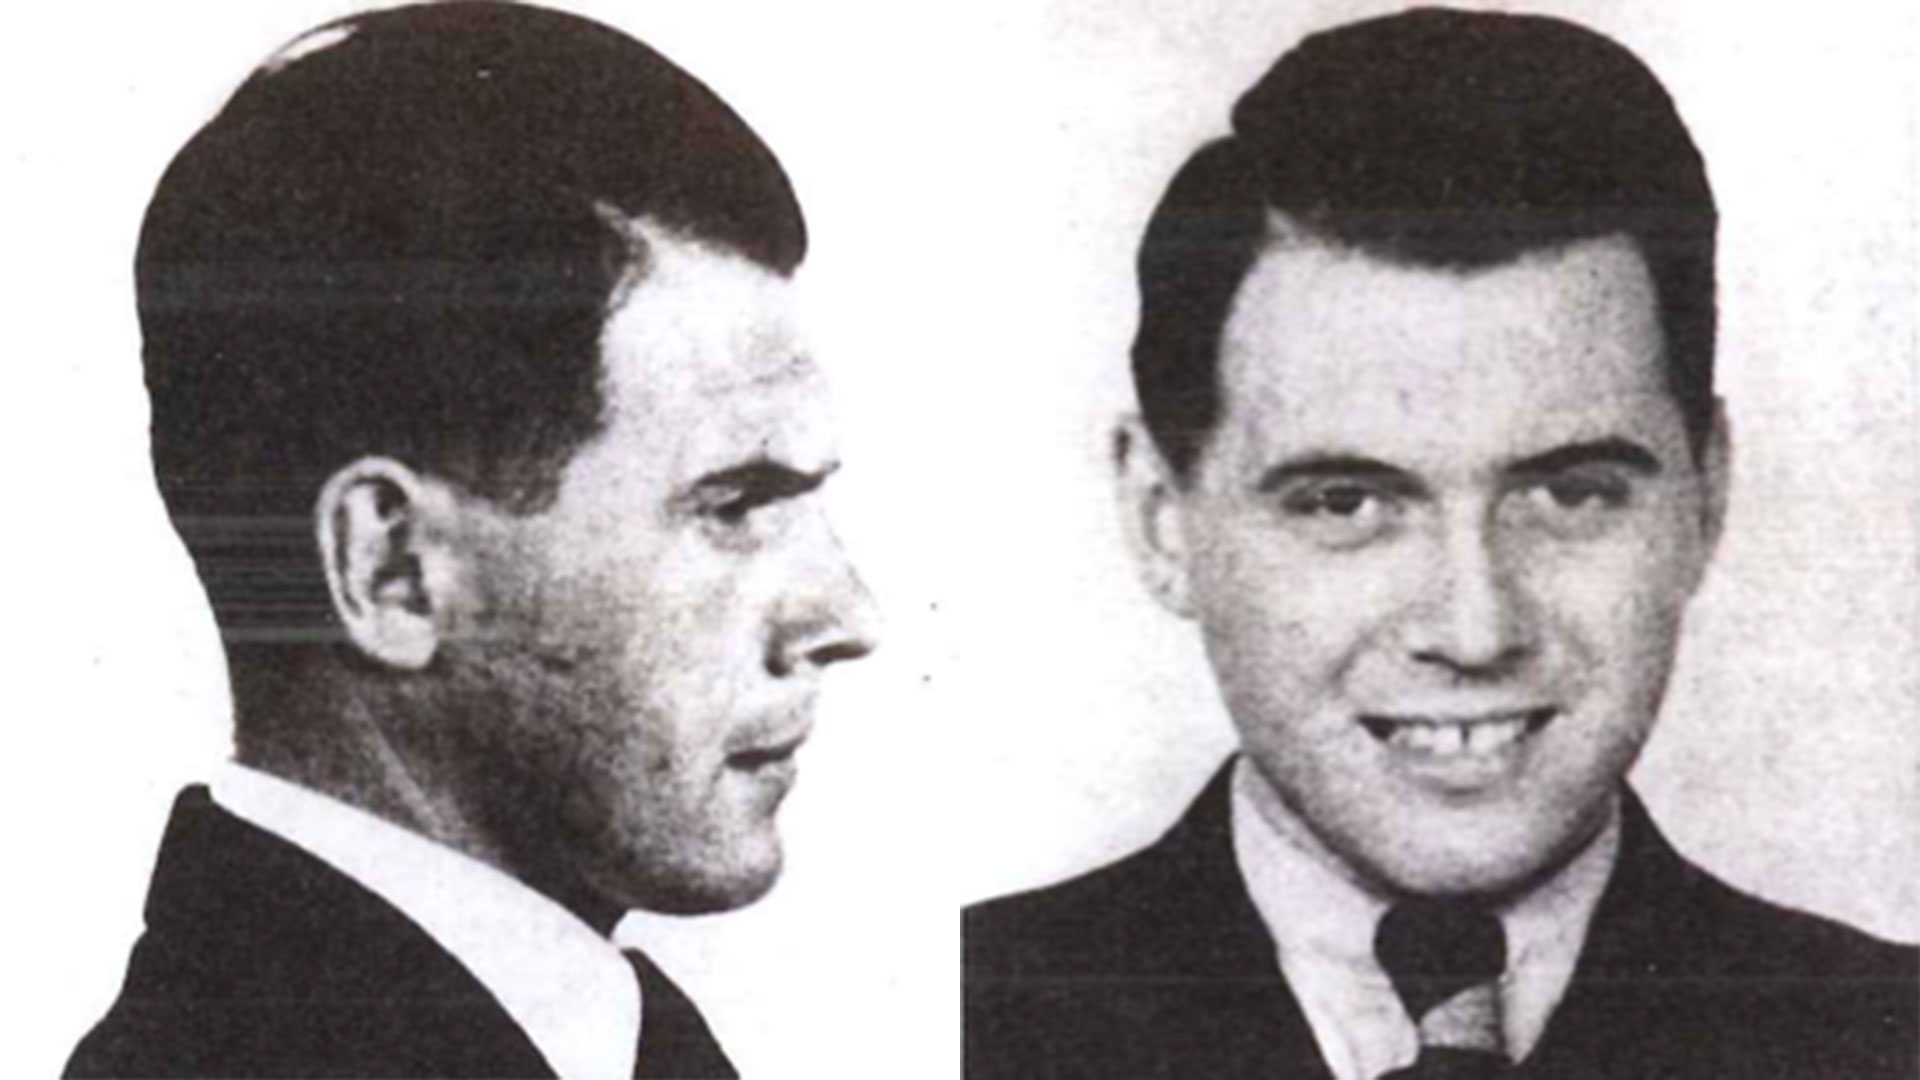 Josef Mengele cambió su identidad por la de Helmut Gregor para huir de Alemania